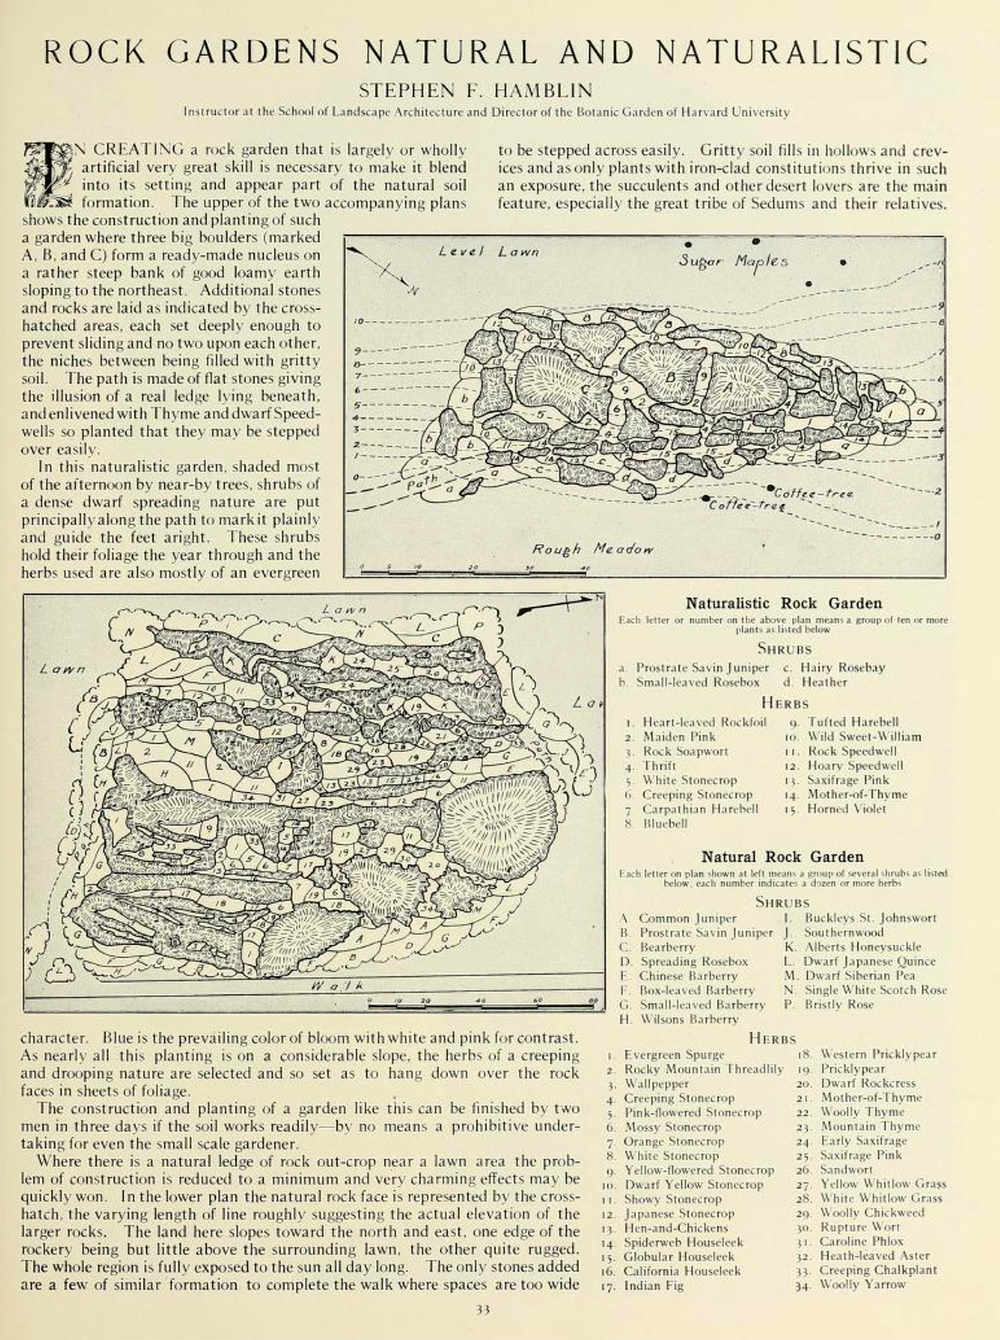 Vintage rock garden article, with diagrams